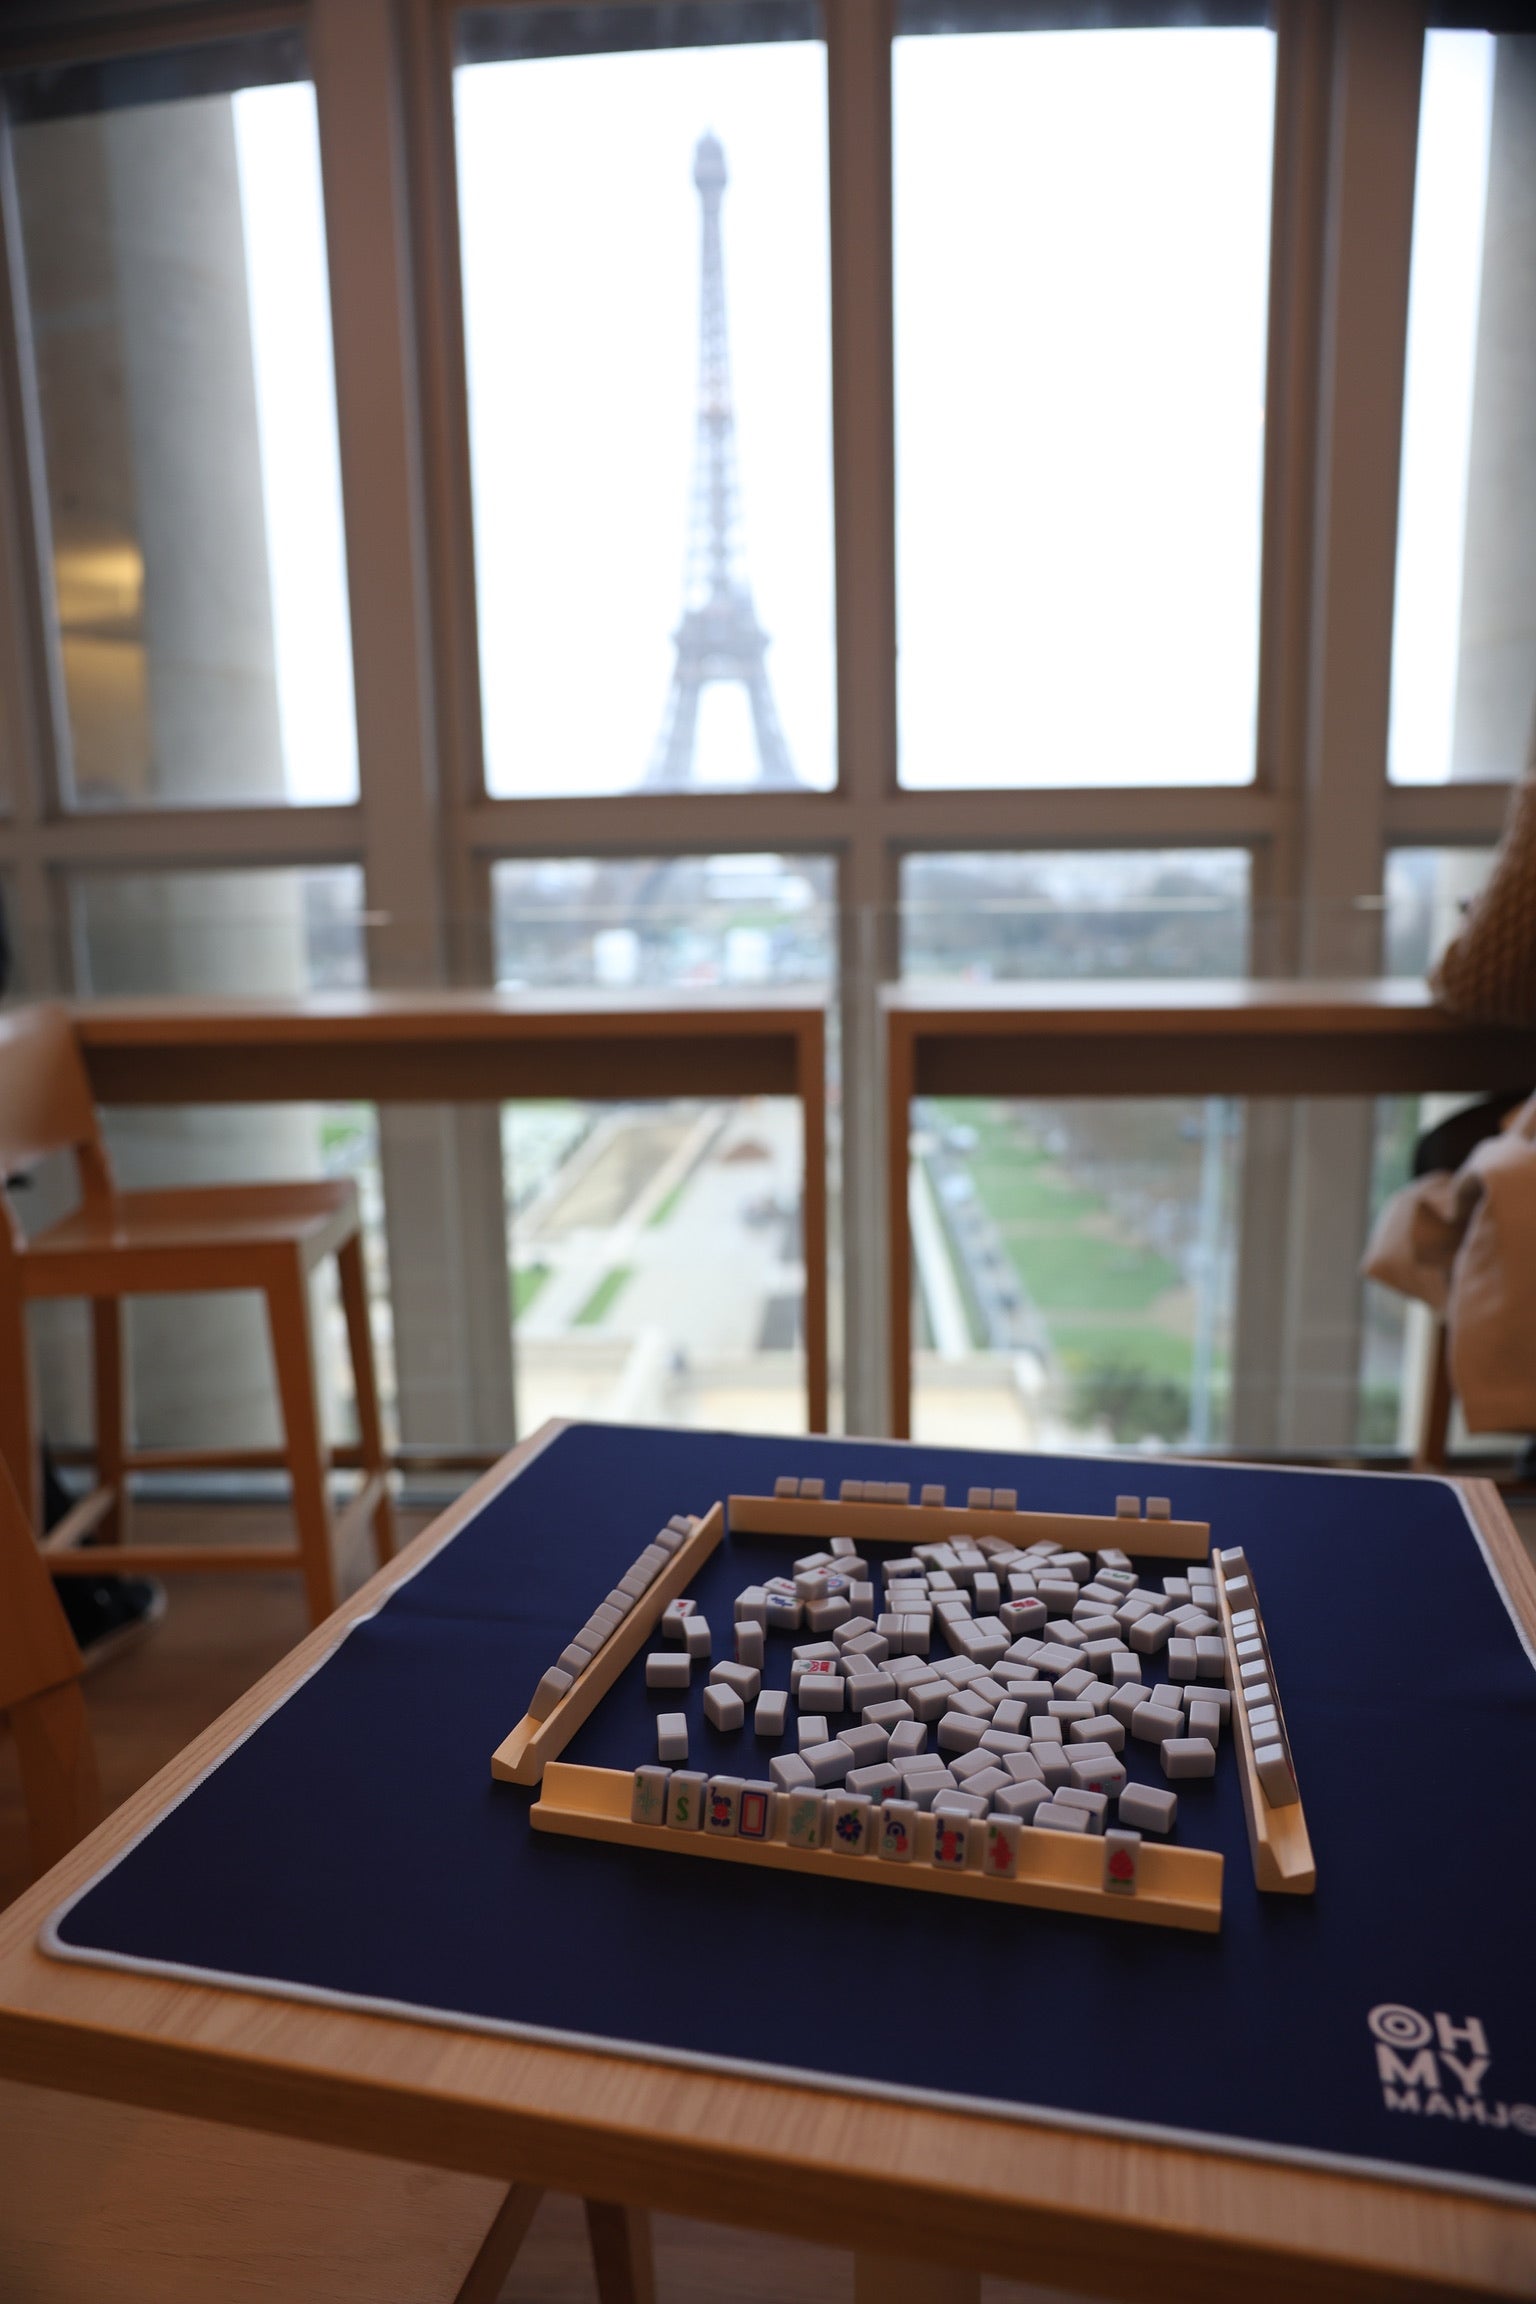 Parisian Blue Mahjong Travel Set - Oh My Mahjong